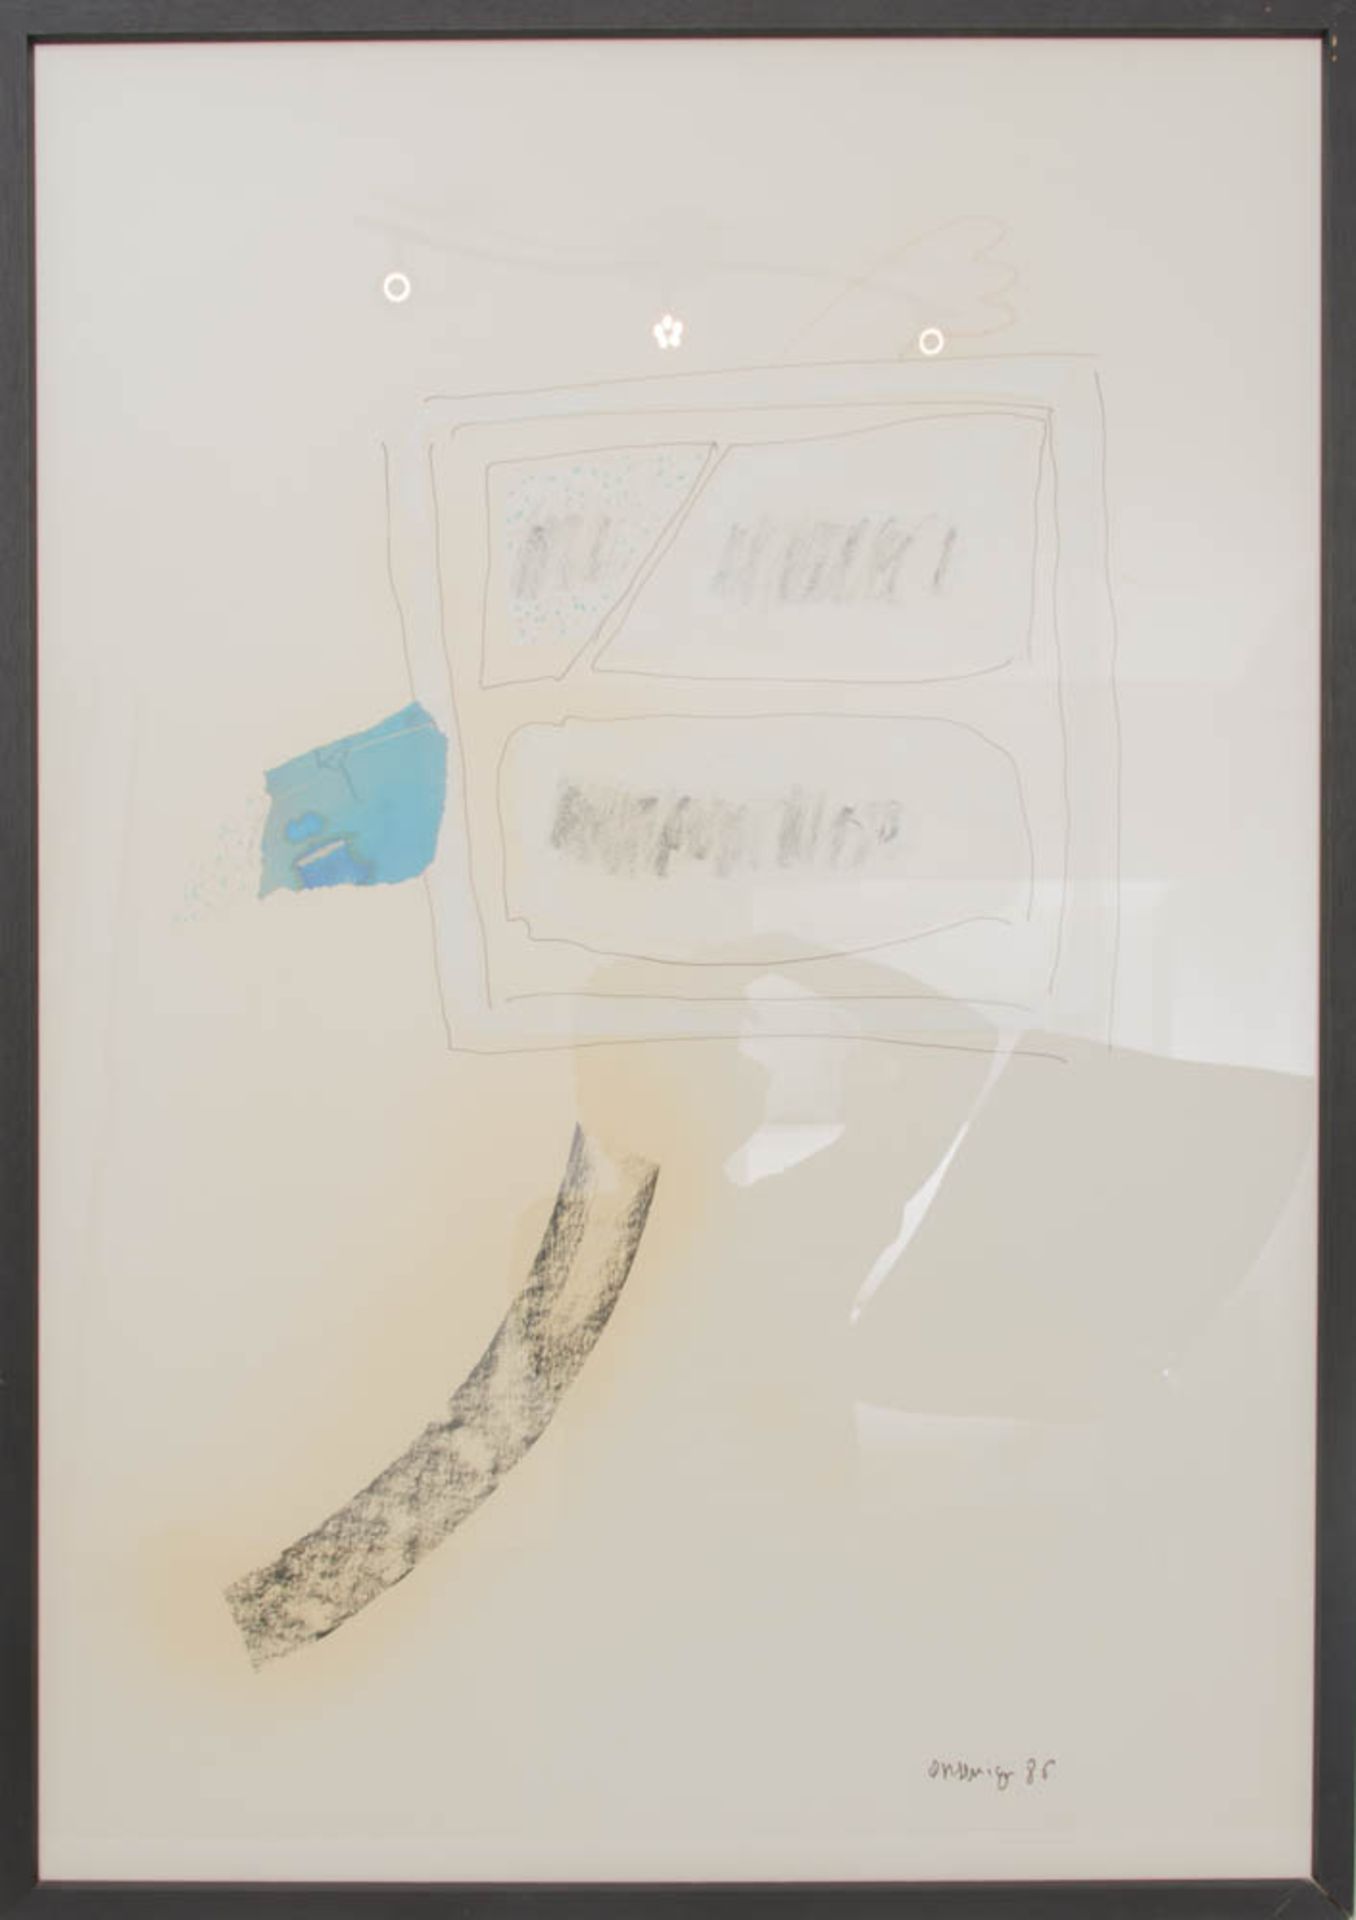 VITTORIO ORSENIGO: "WINDOW", Mischtechnik auf Papier. hinter Glas gerahmt, signiert und